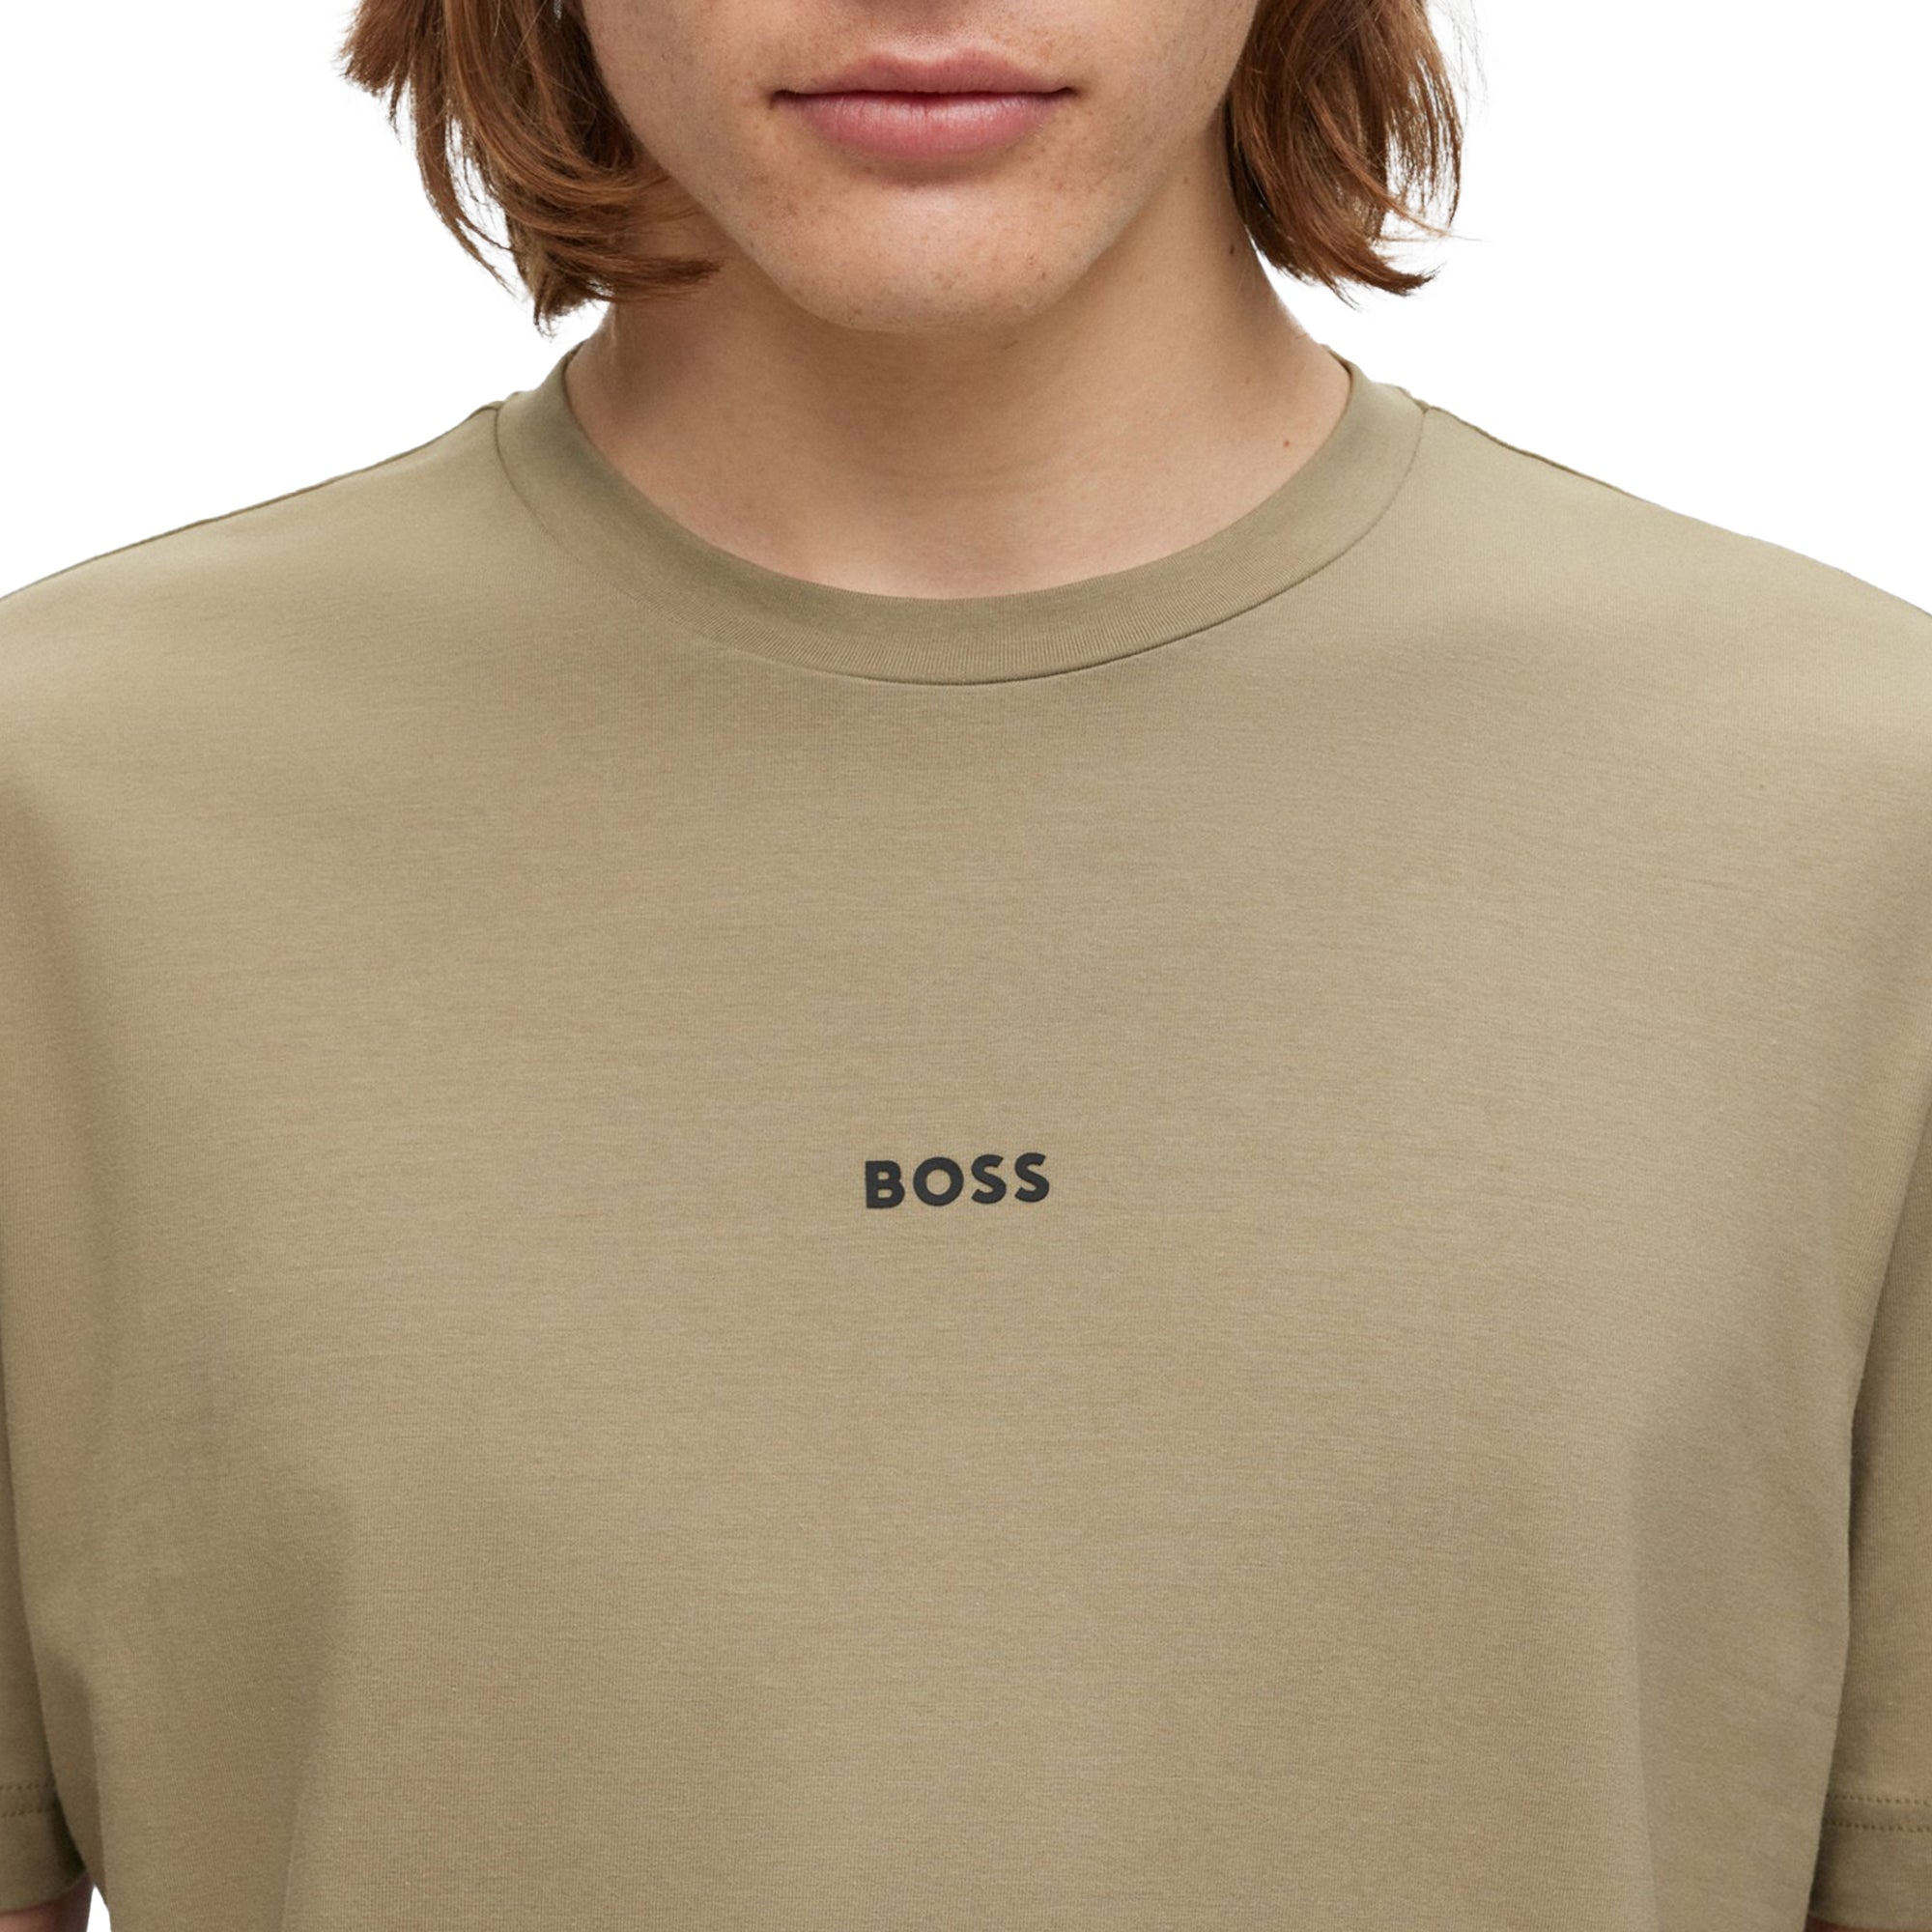 Boss TChup T-Shirt - Khaki Green